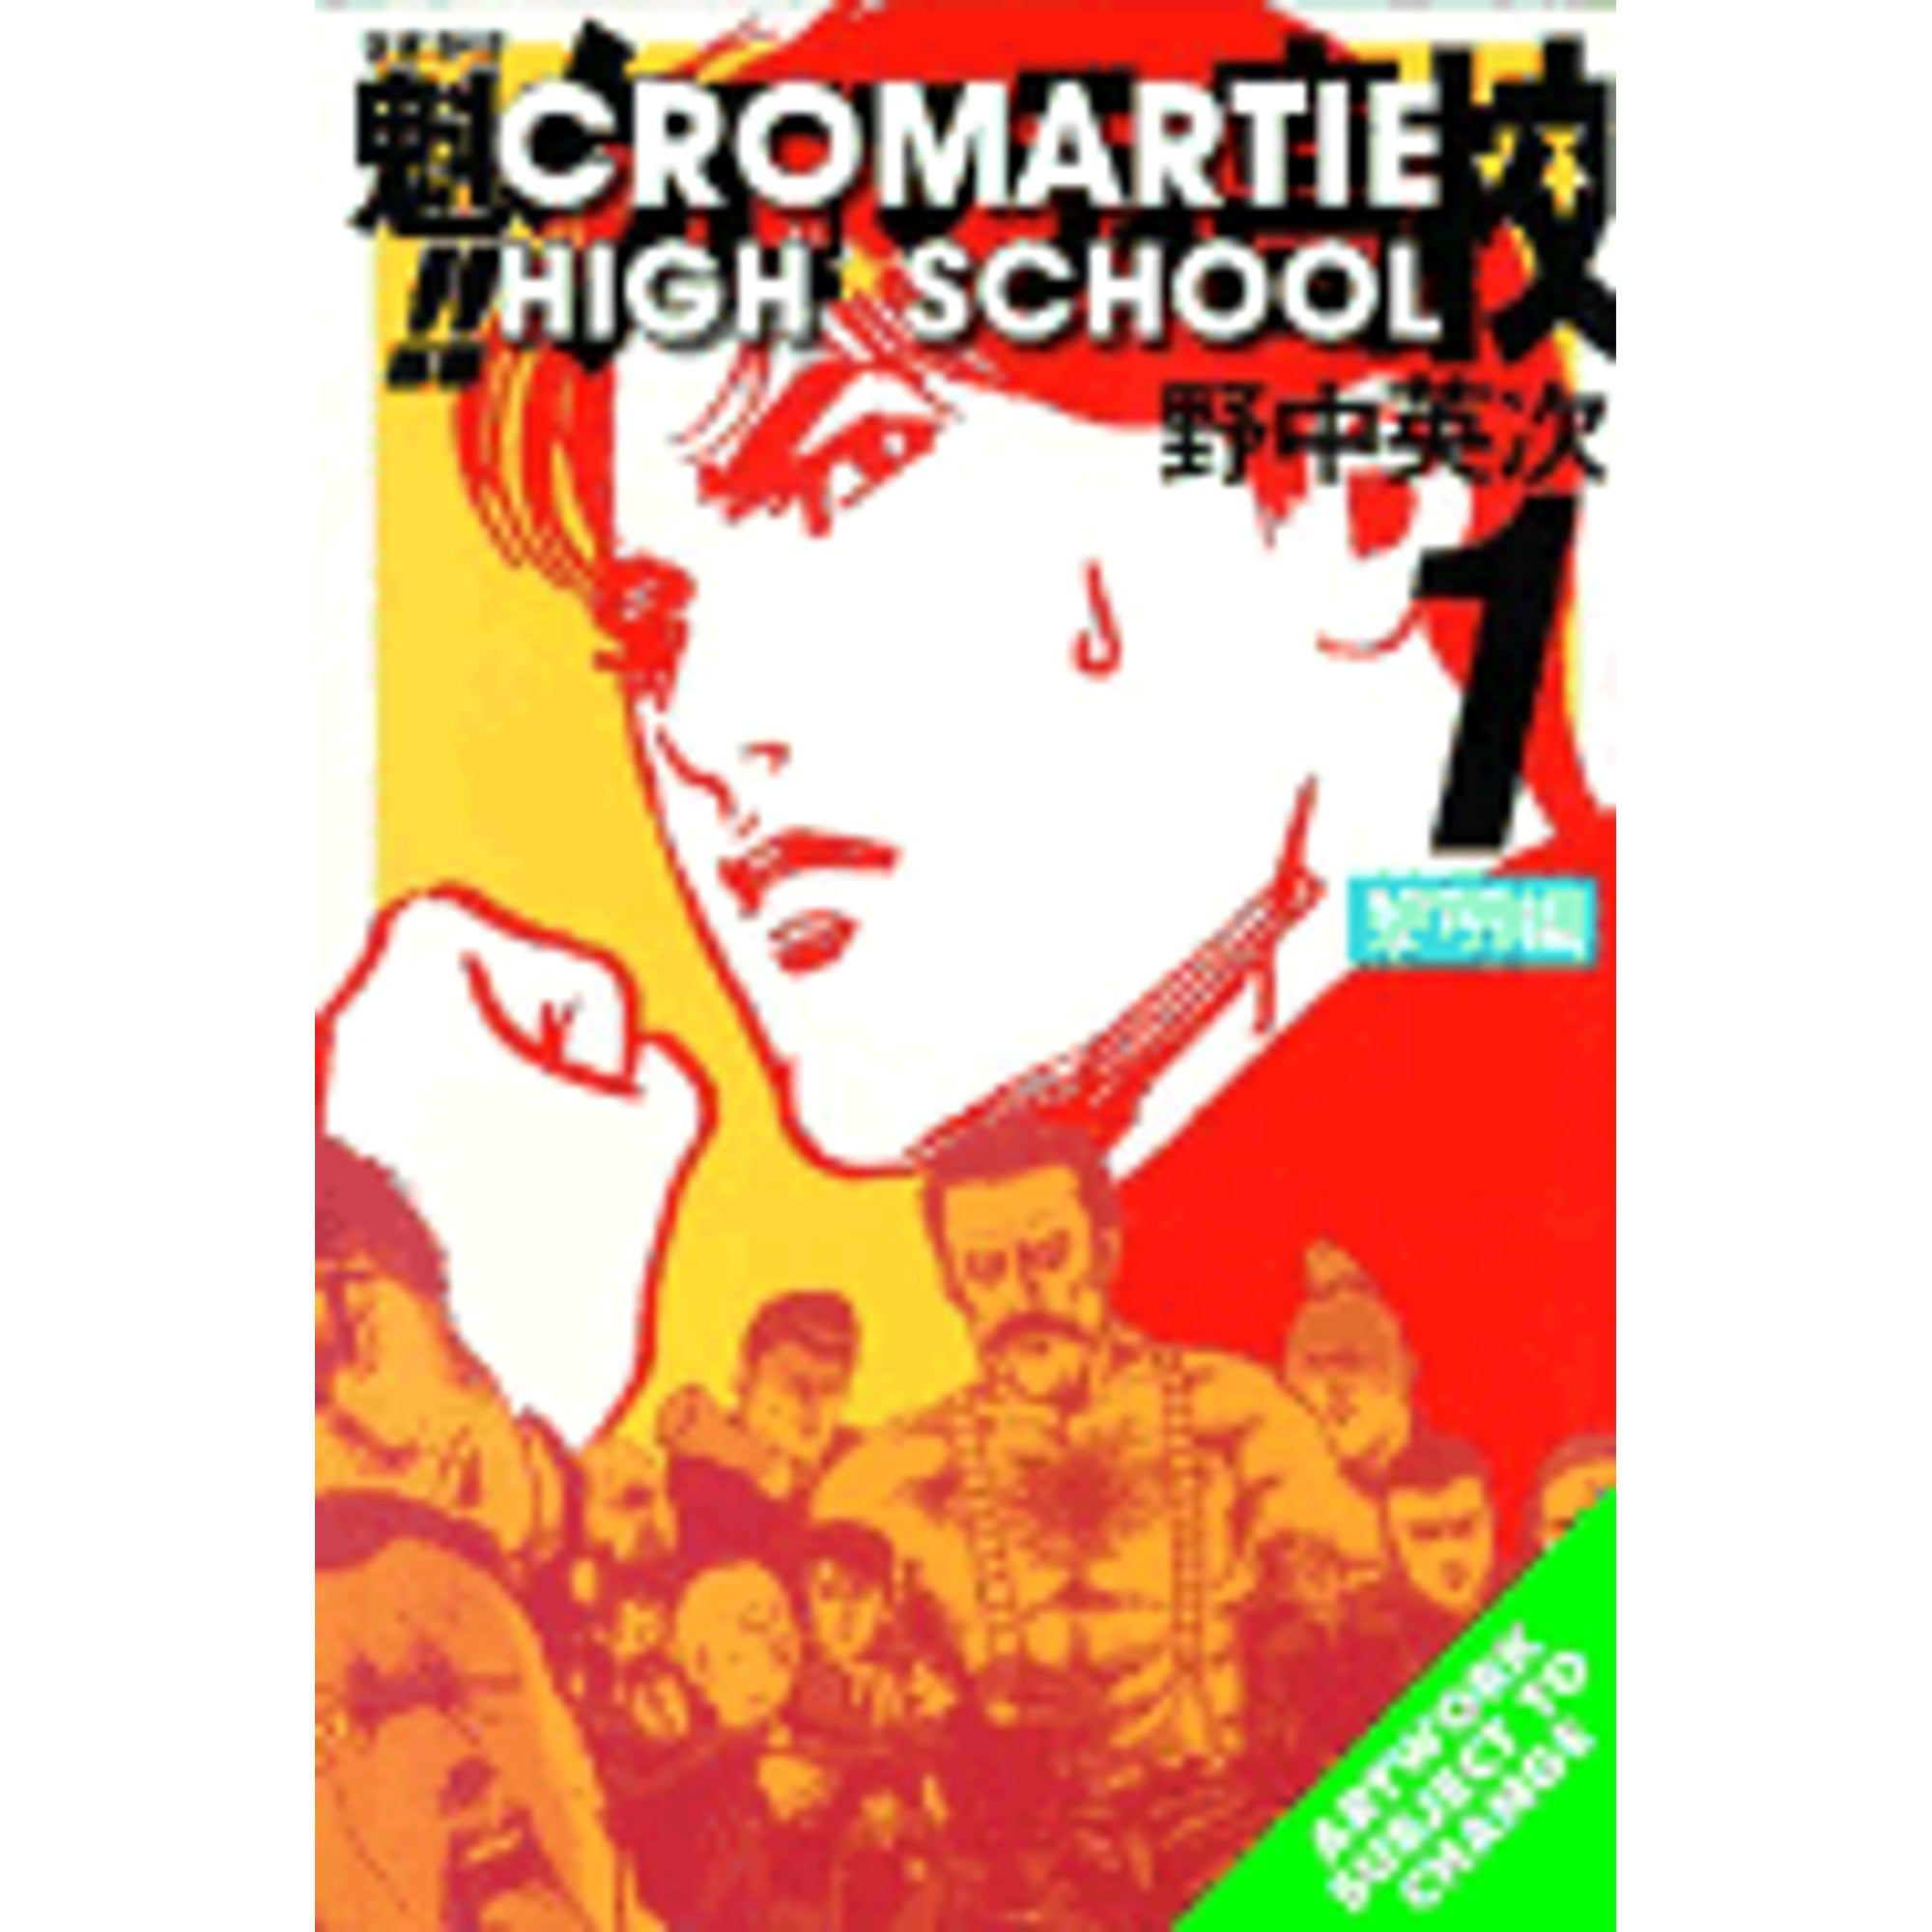 cromartie-high-school